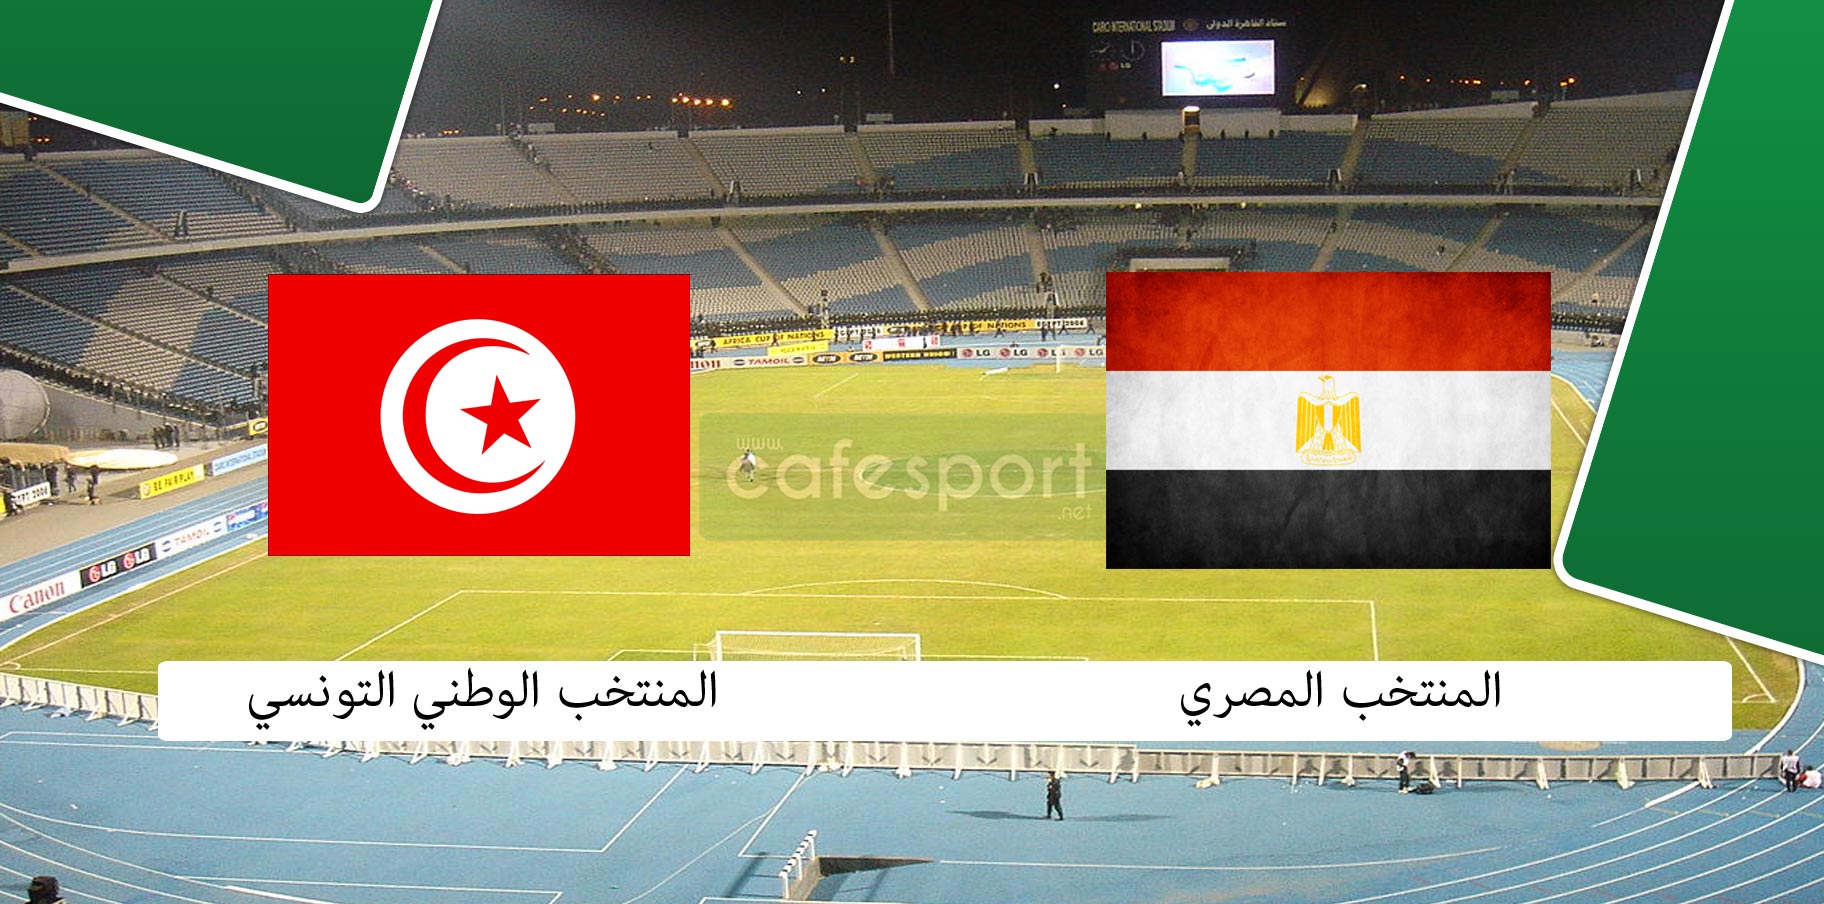 التشكيلة الأساسية للمنتخب التونسي ضد المنتخب المصري